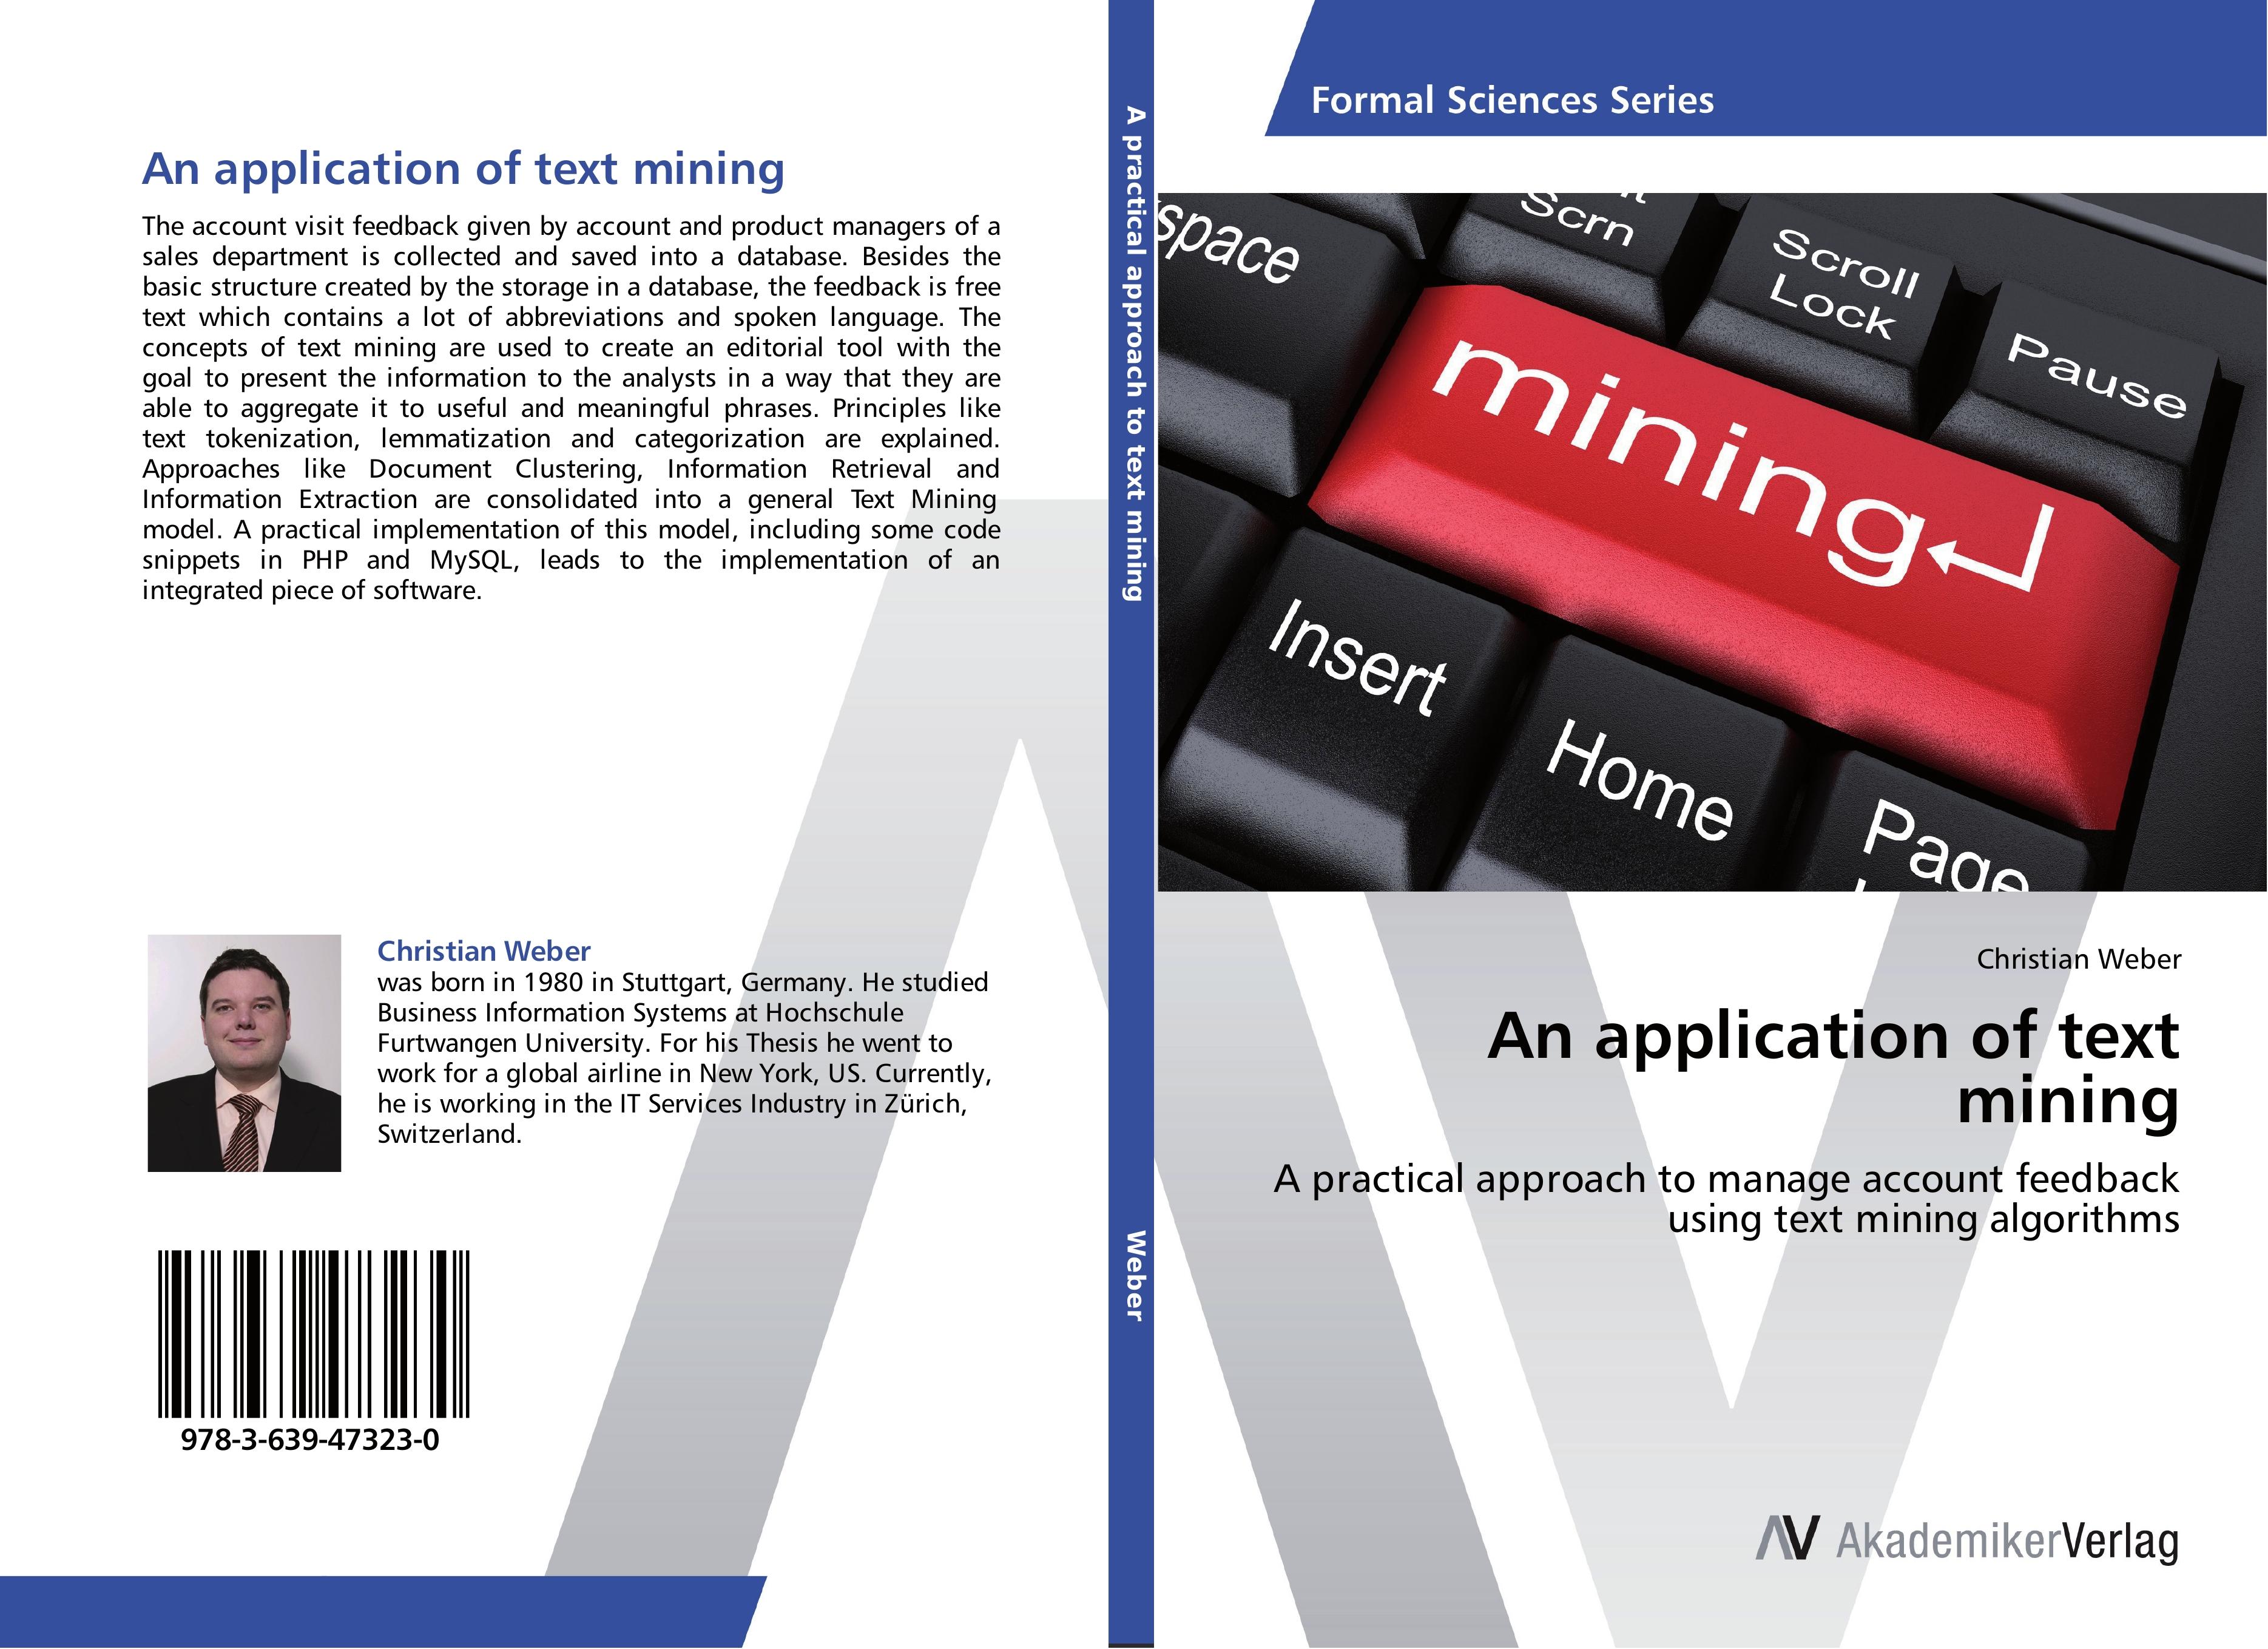 An application of text mining - Christian Weber